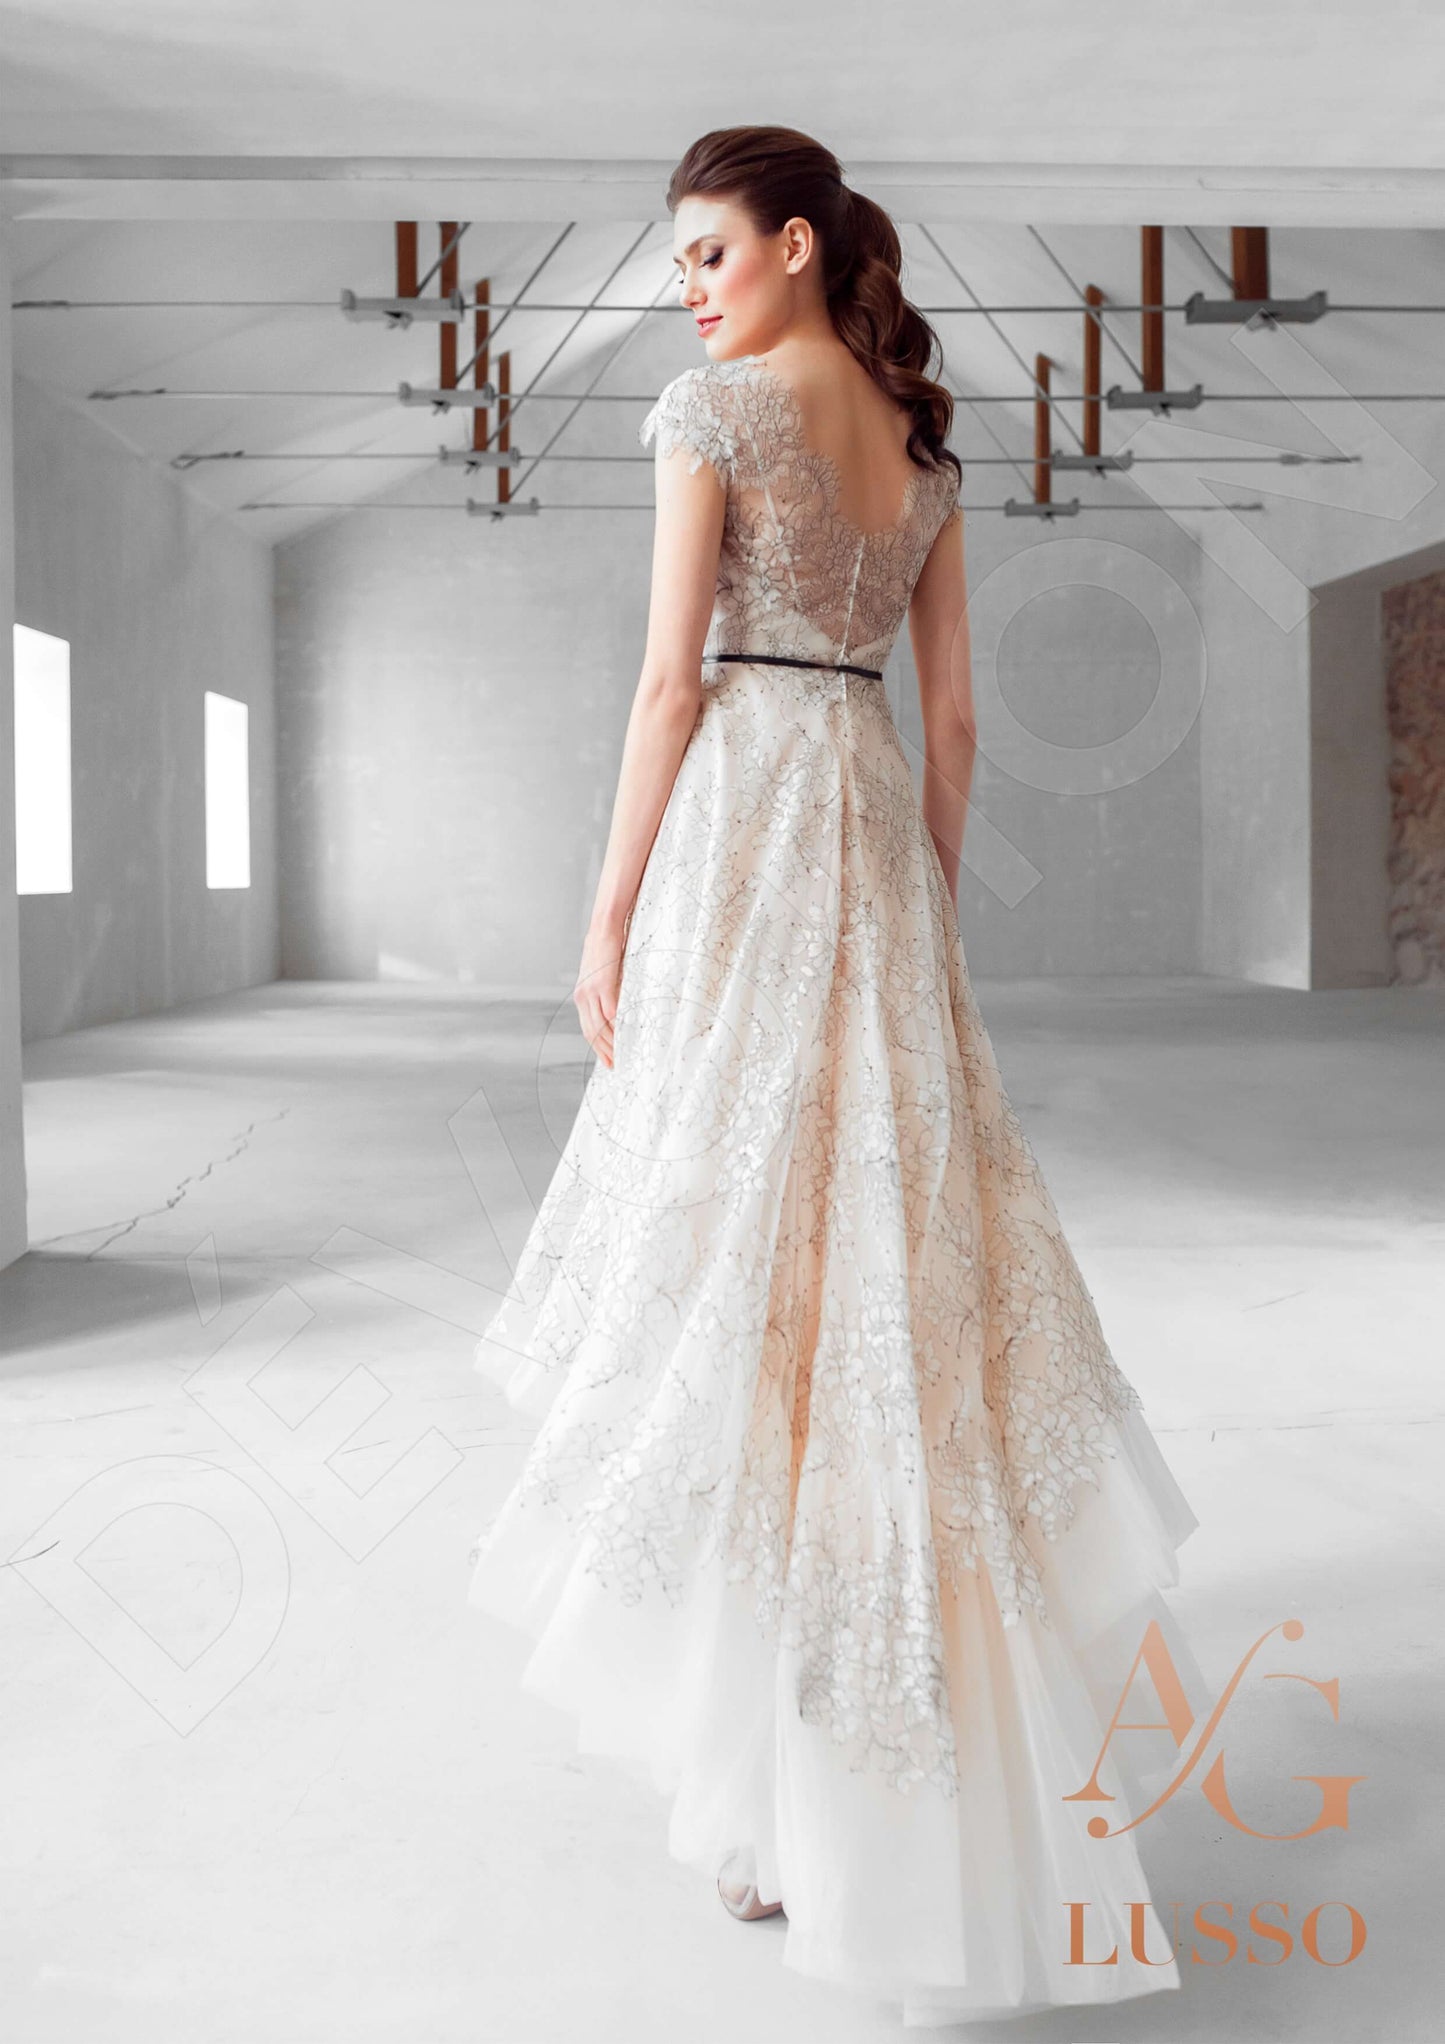 Cillie Open back A-line Sleeveless Wedding Dress Back